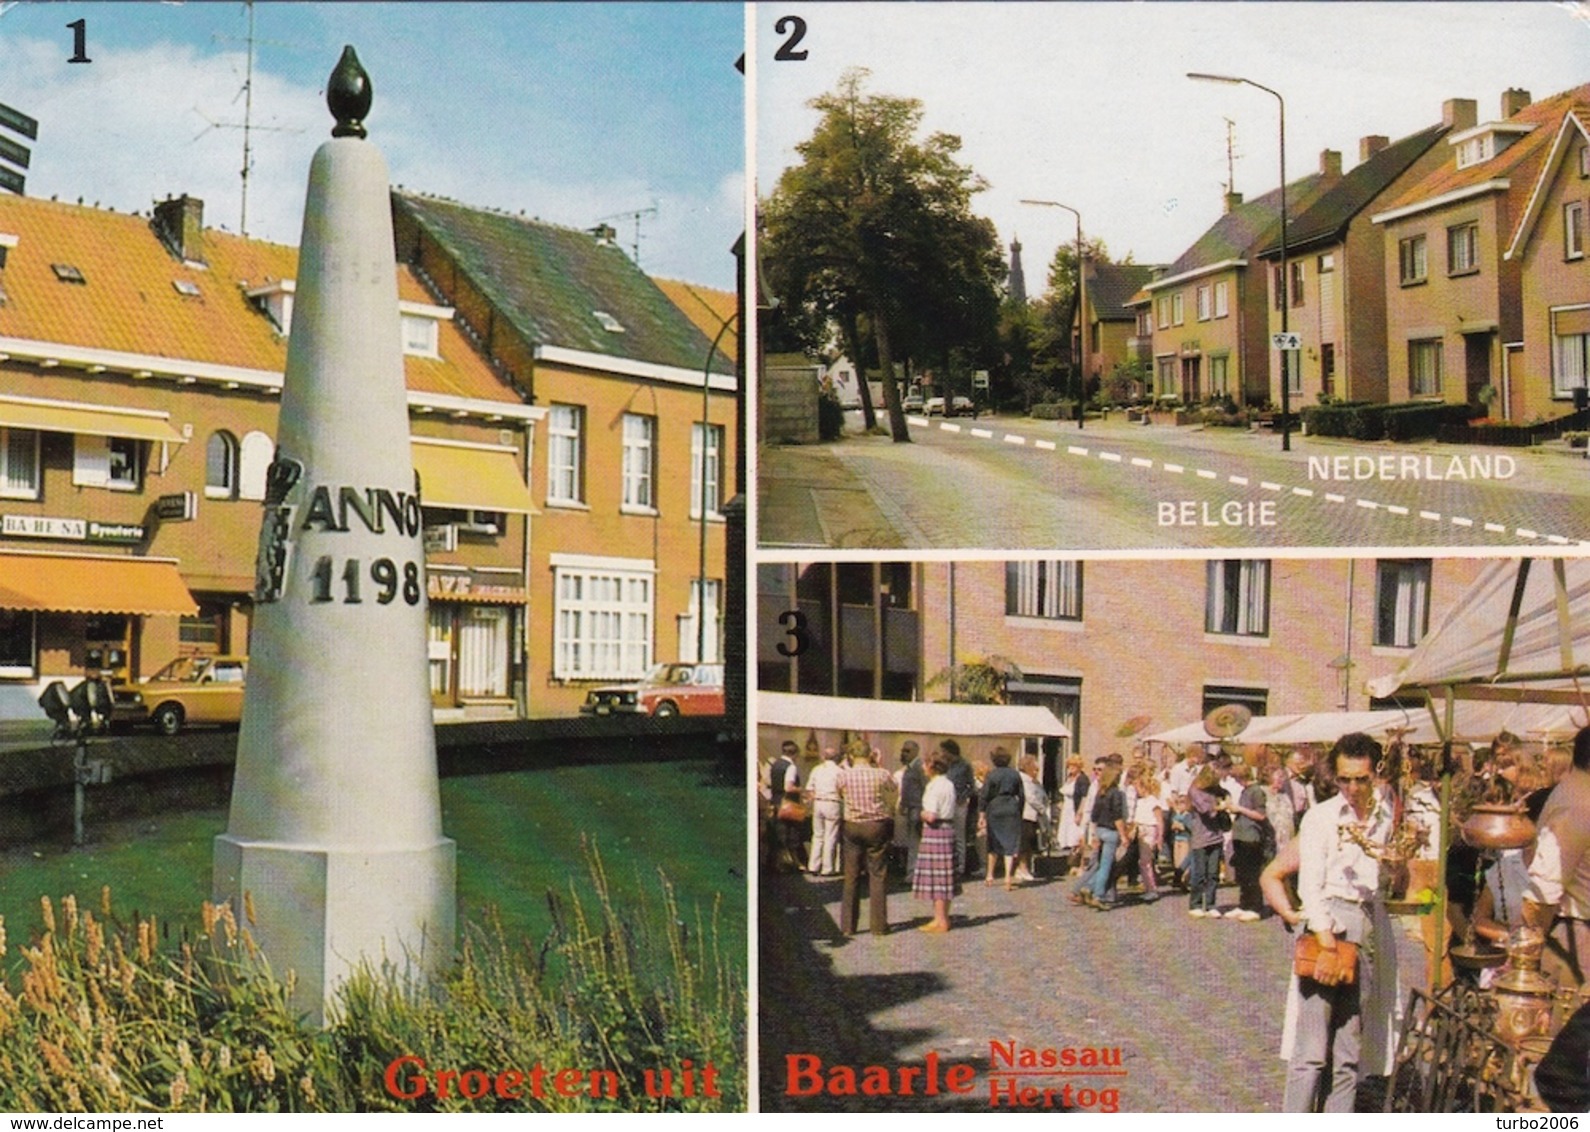 31-IX-1989 BAARLE NASSAU / BAARLE HERTOG Grenspaal 1198 Alpenseweg Kleur - Douane